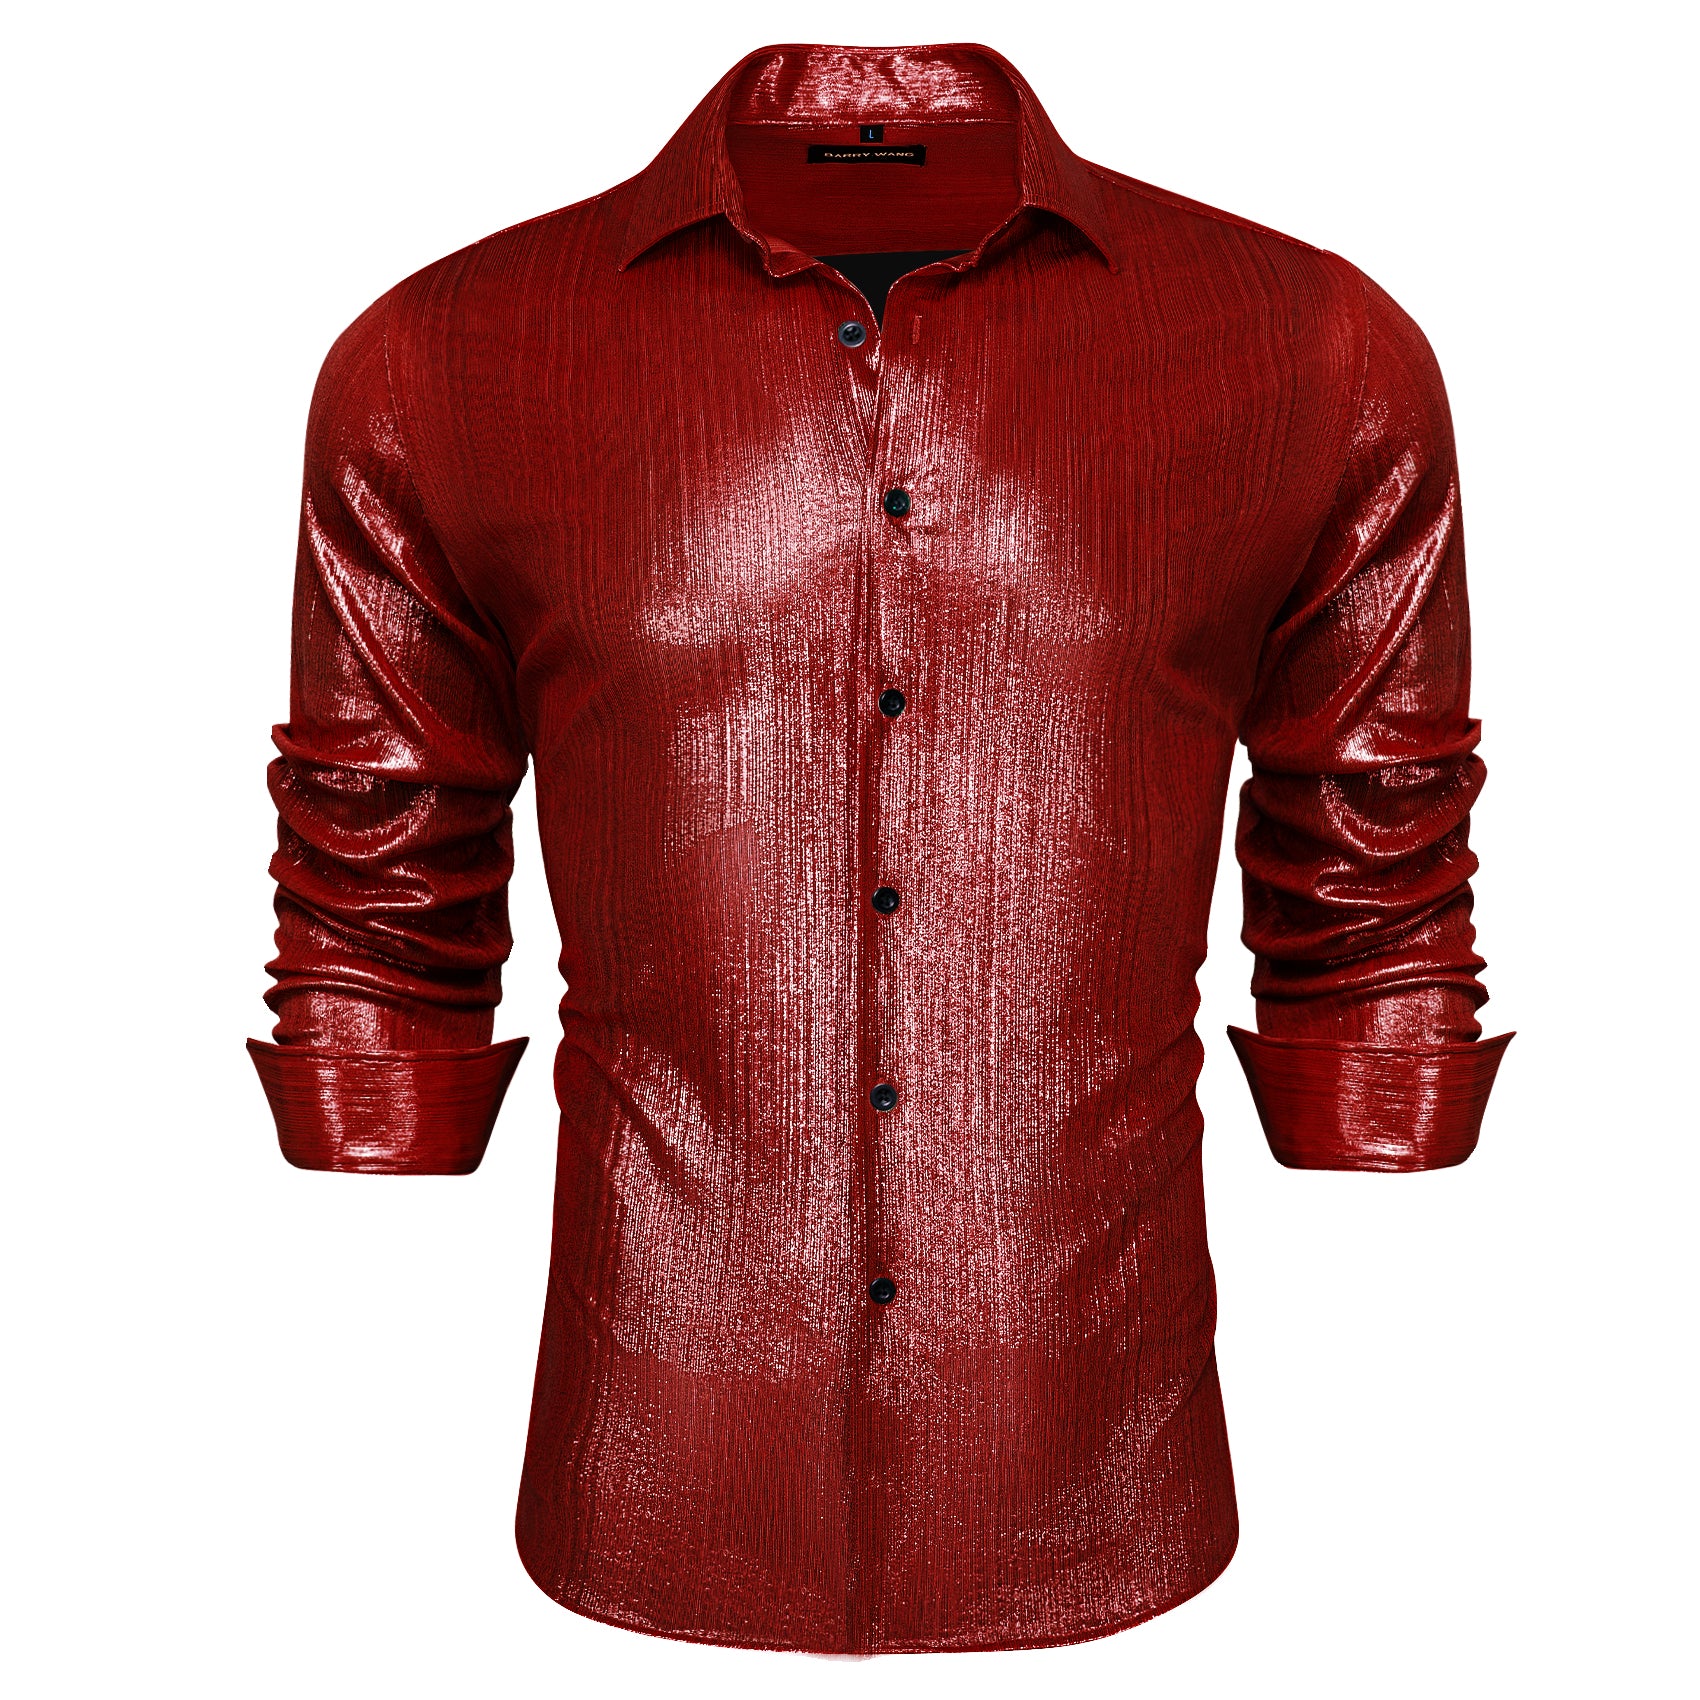 Barry.wang Button Down Shirt Brick Red Solid Silk Men's Long Sleeve Shirt